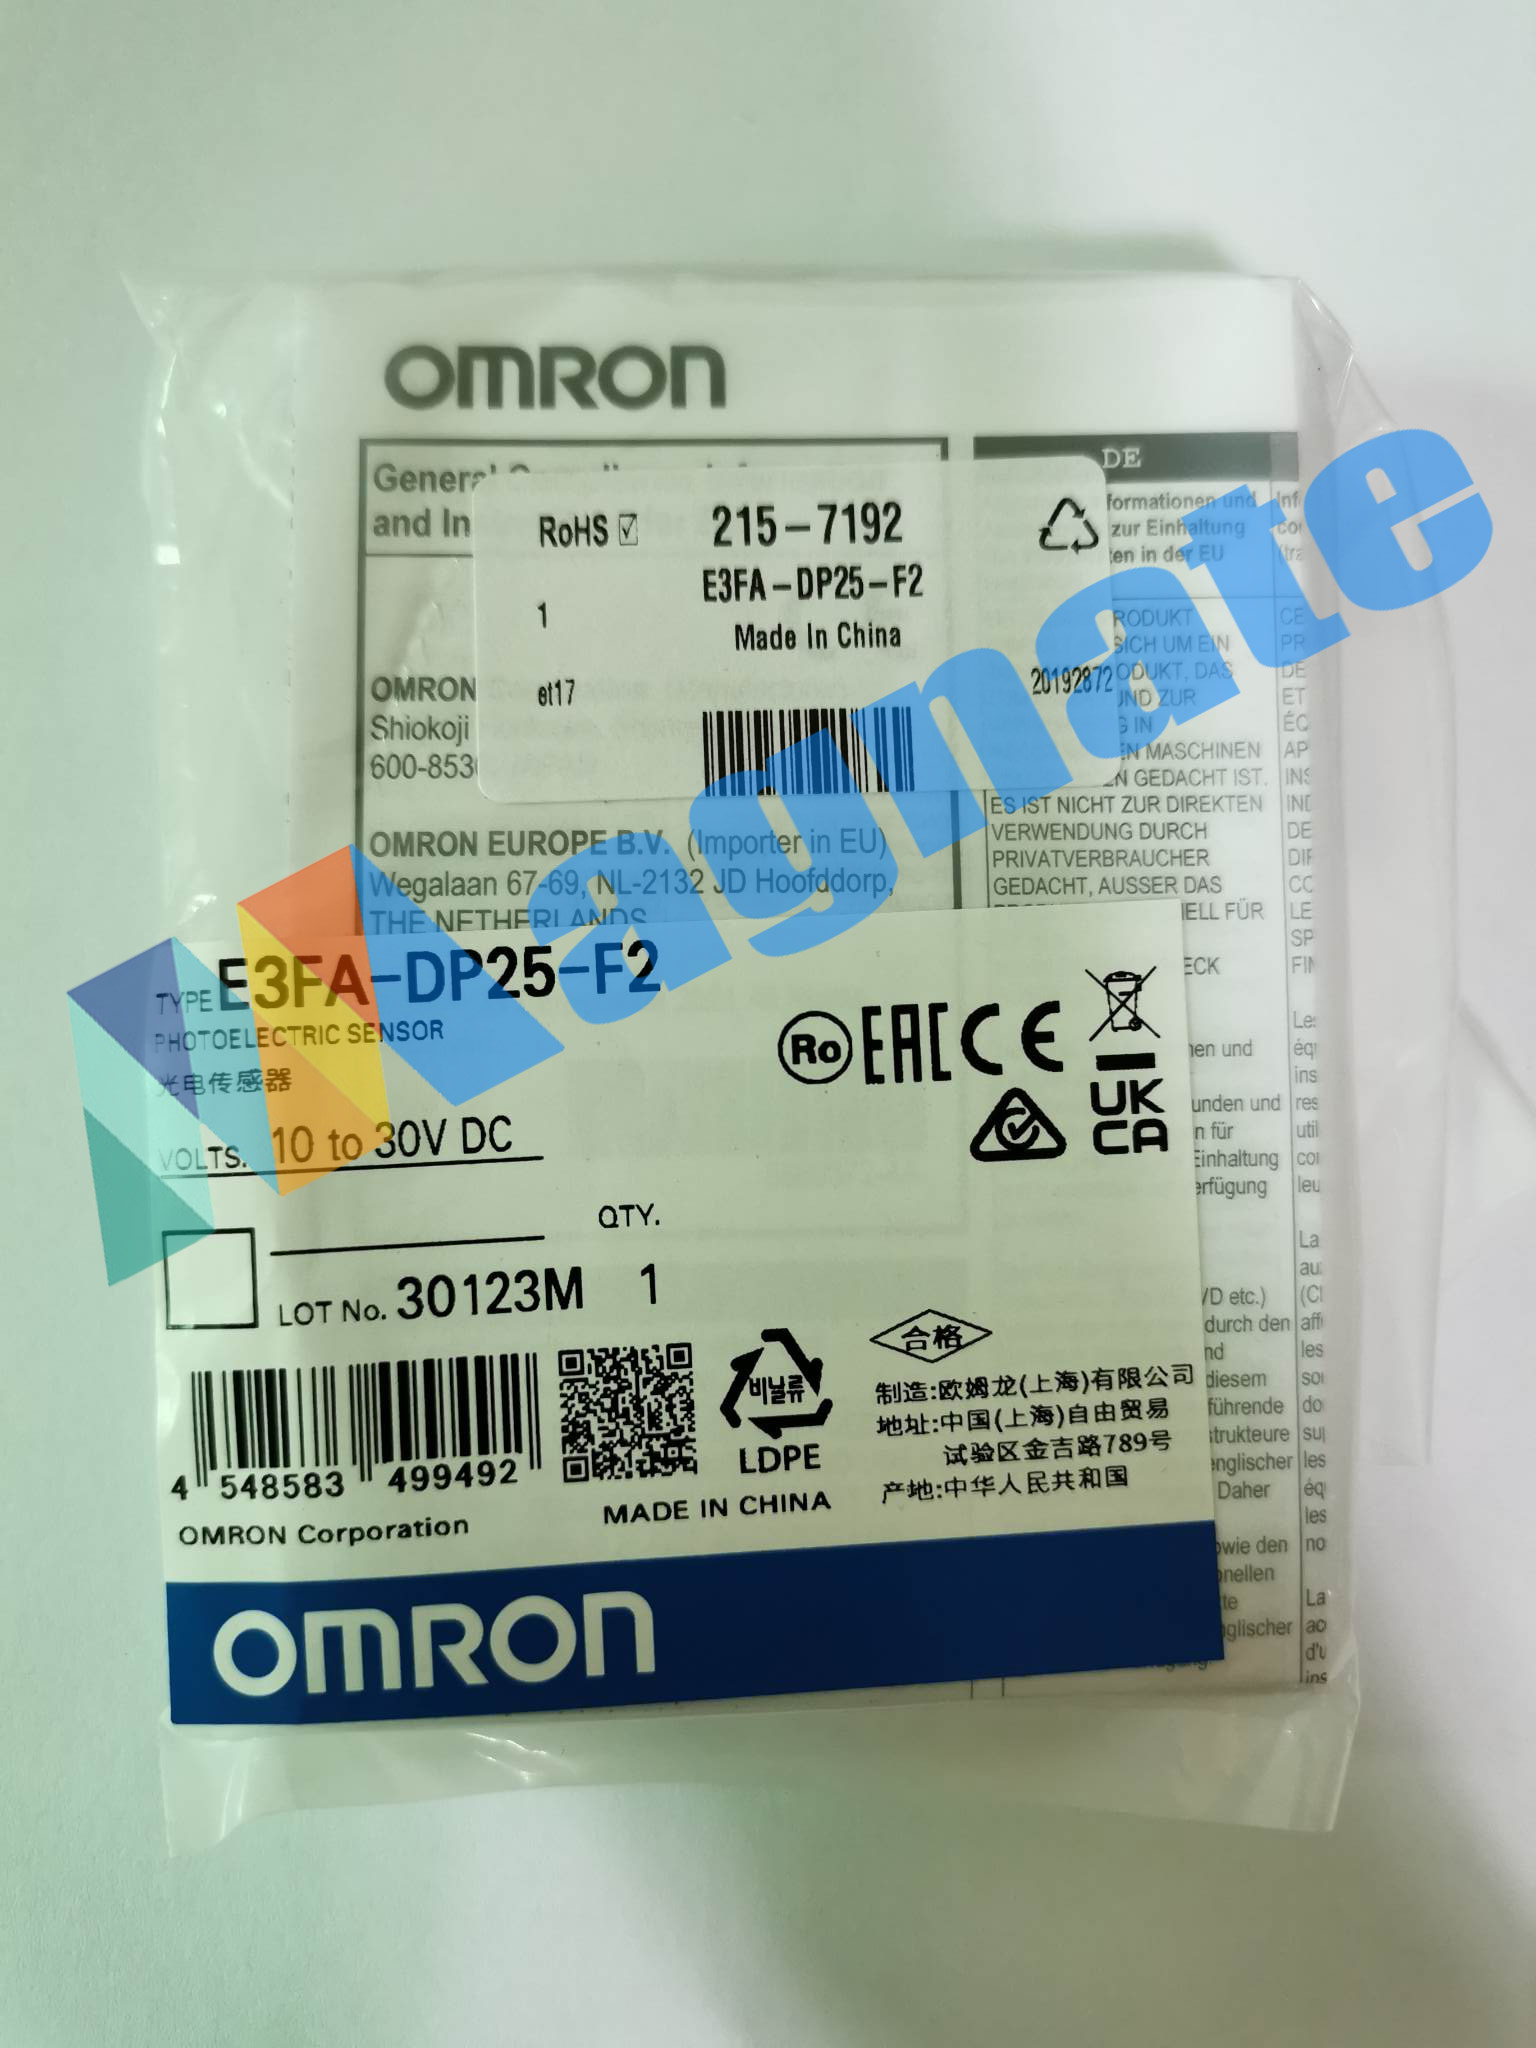 Brand: Omron Photoelectric Sensor Type: E3FA-DP25-F2